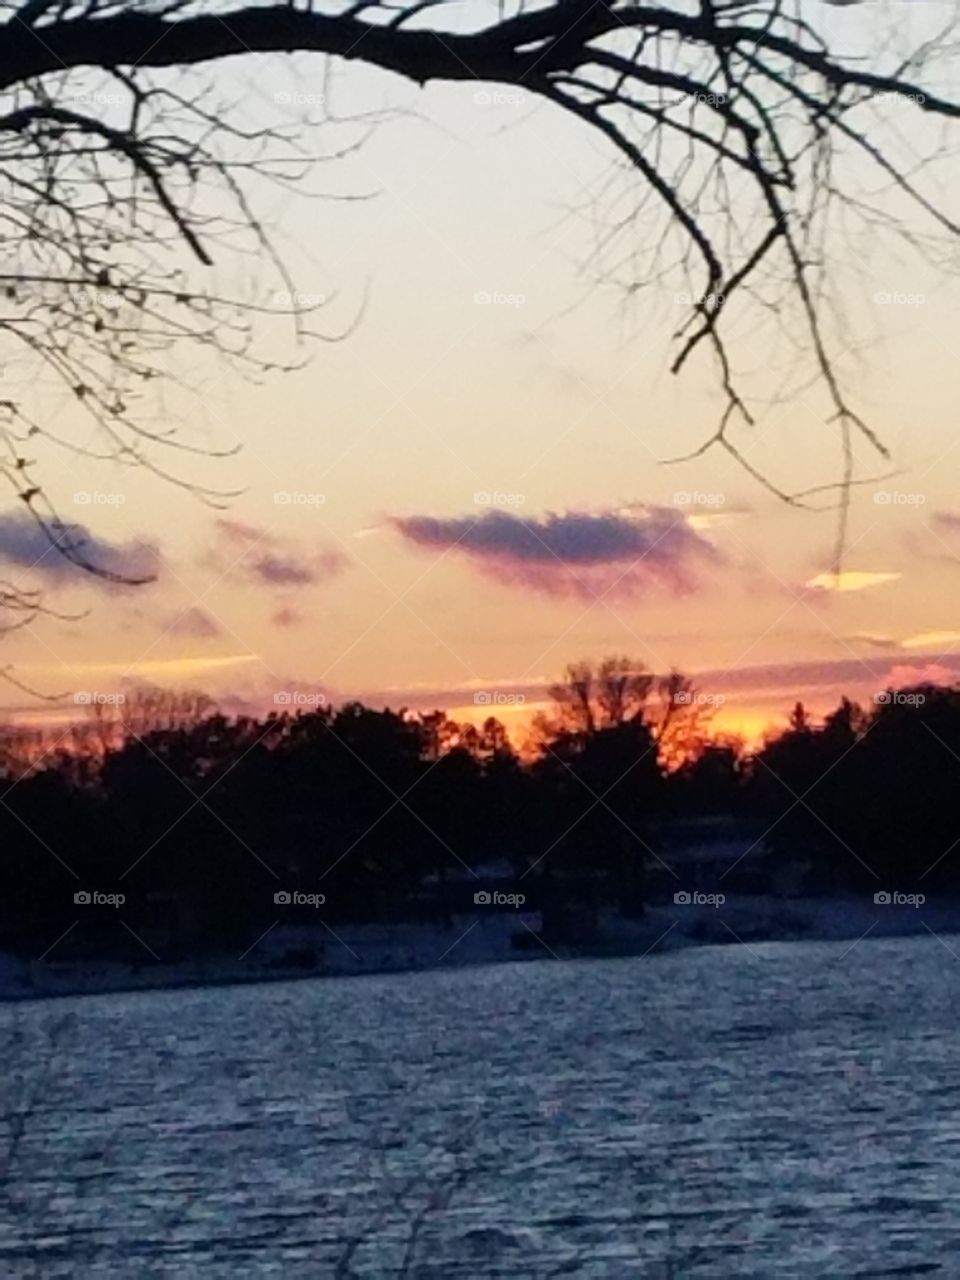 Marvelous winter sunset